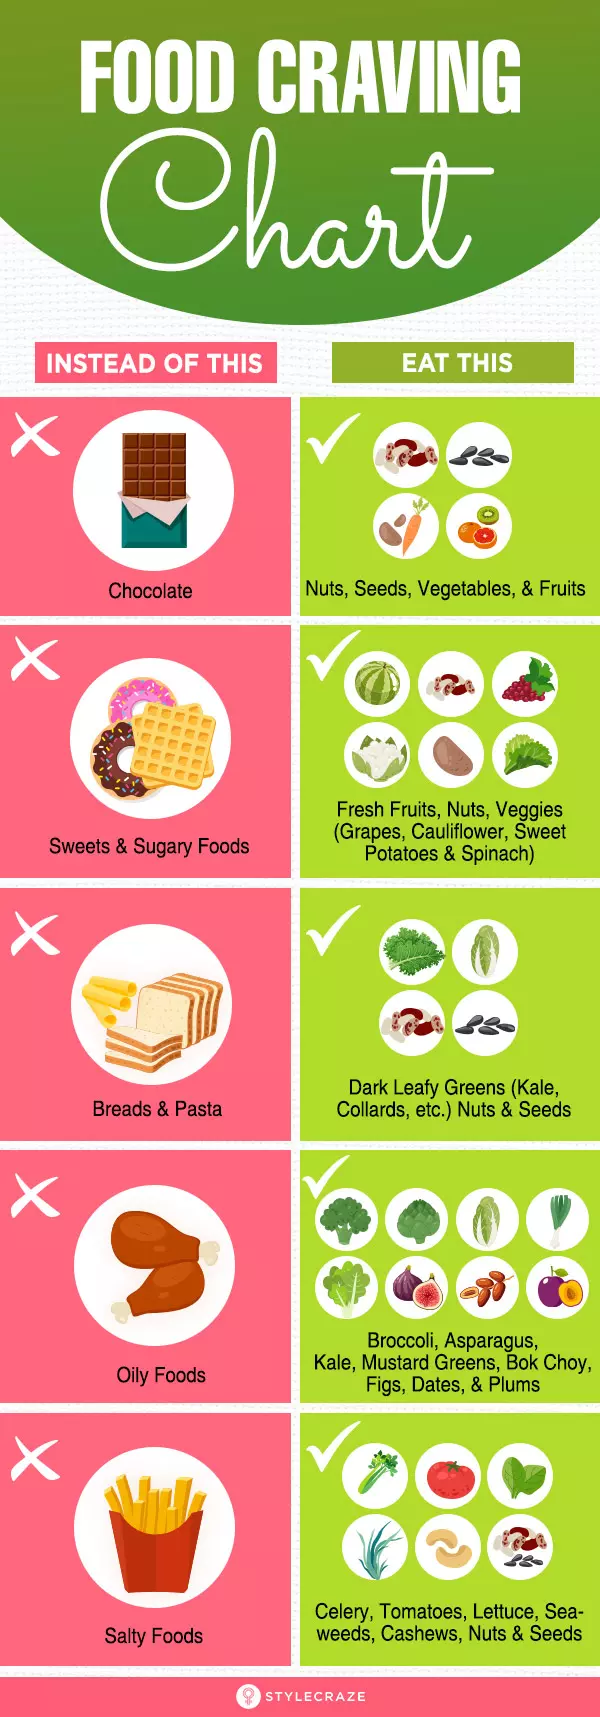 Food Craving Chart – Replacing Cravings